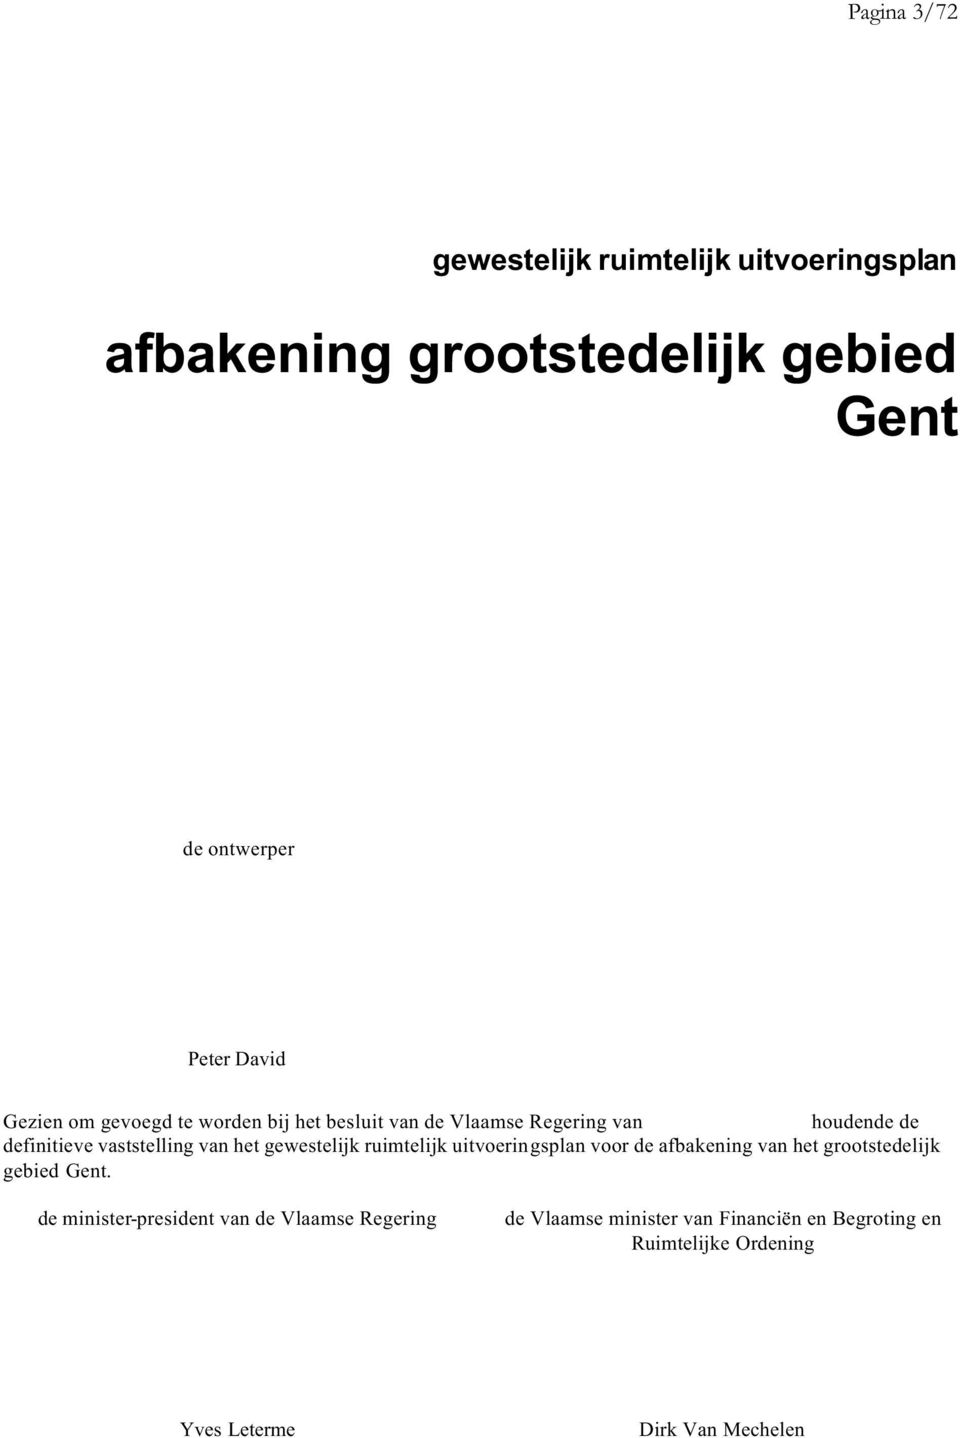 gewestelijk ruimtelijk uitvoeringsplan voor de afbakening van het grootstedelijk gebied Gent.